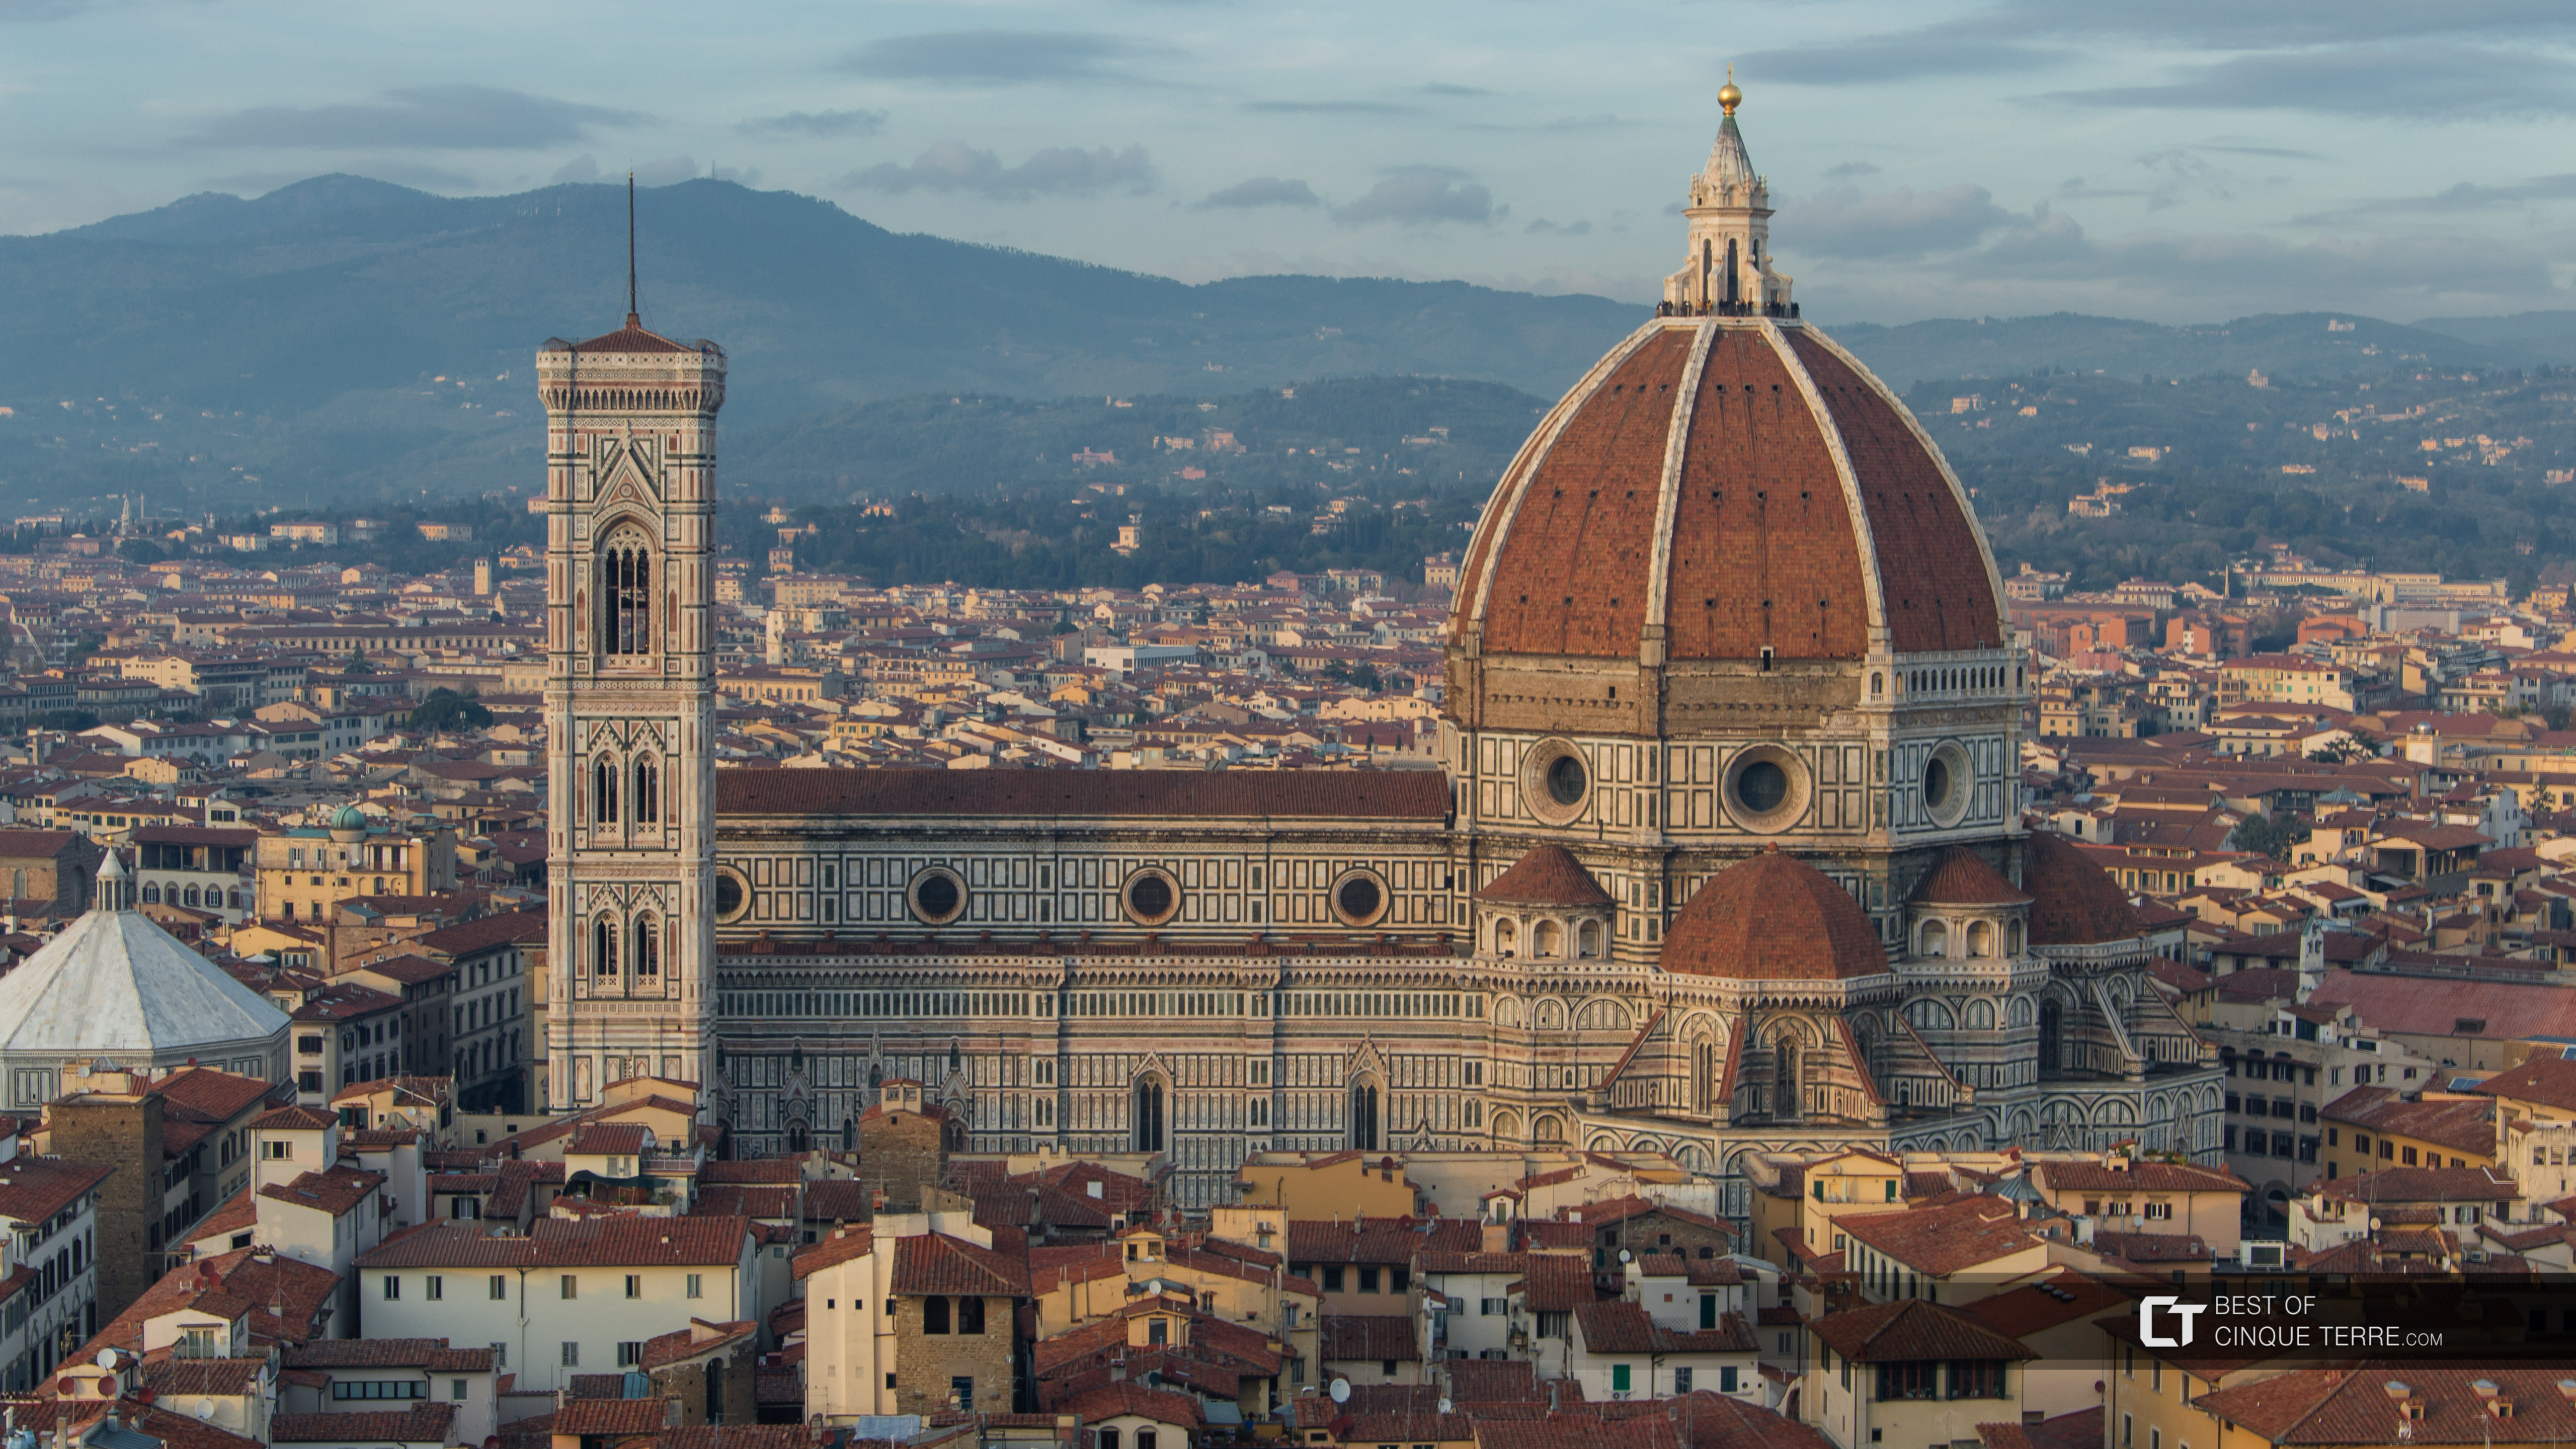 La cathédrale Sante Maria del Fiore, vue depuis la tour du Palazzo Vecchio, Florence, Italie